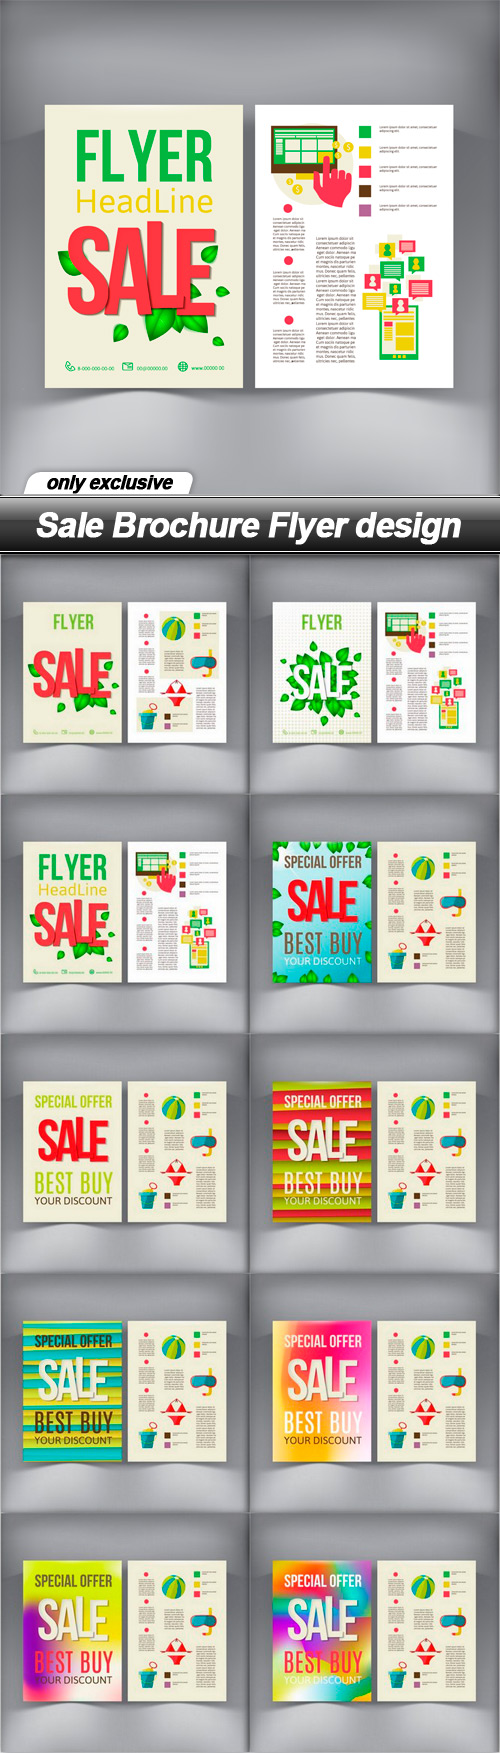 Sale Brochure Flyer design - 10 EPS